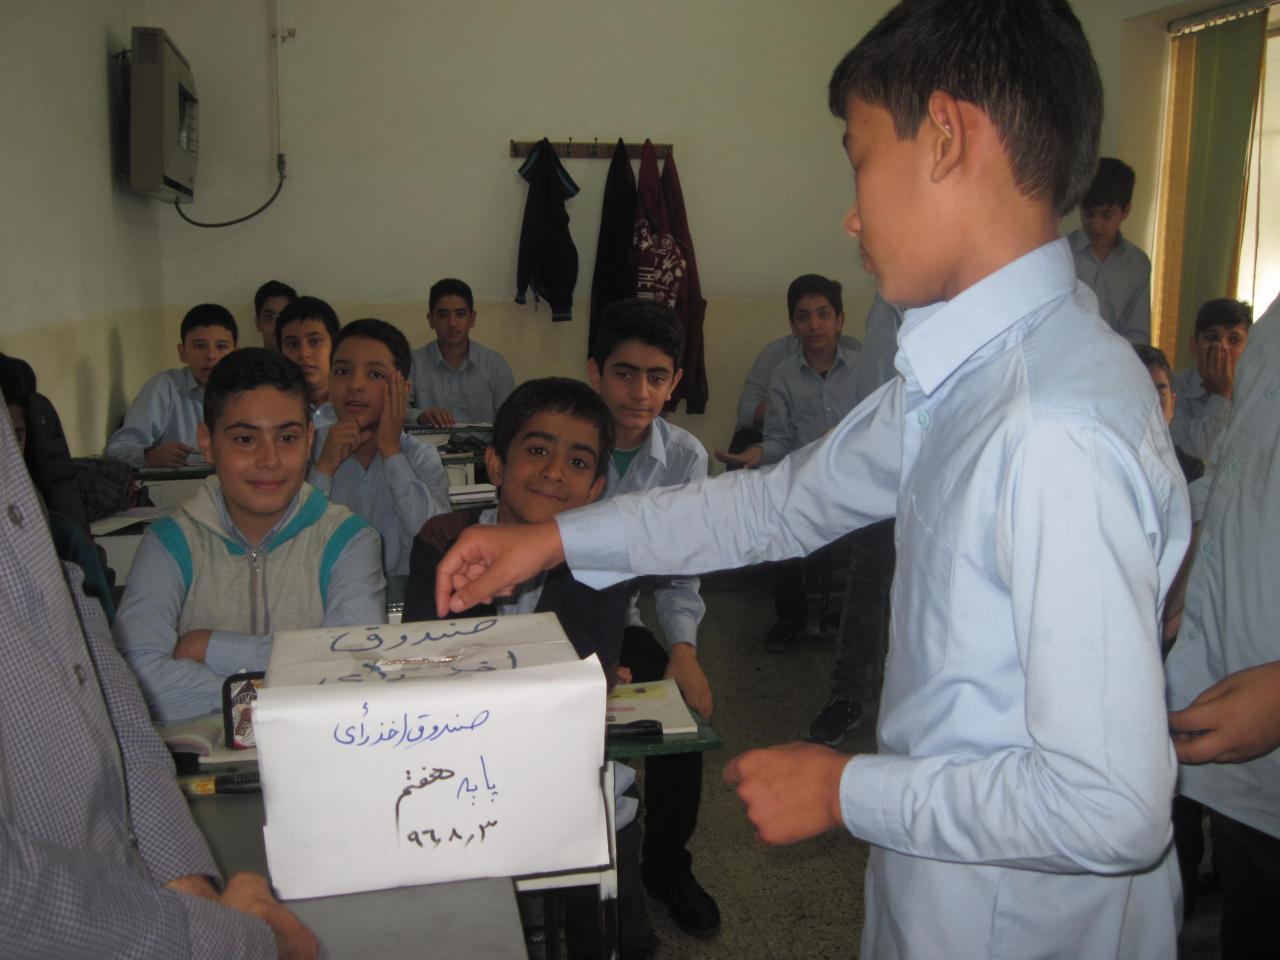 انتخابات شورای دانش آموزی دبیرستان فارابی روز چهارشنبه ۹۶/۰۸/۰۳